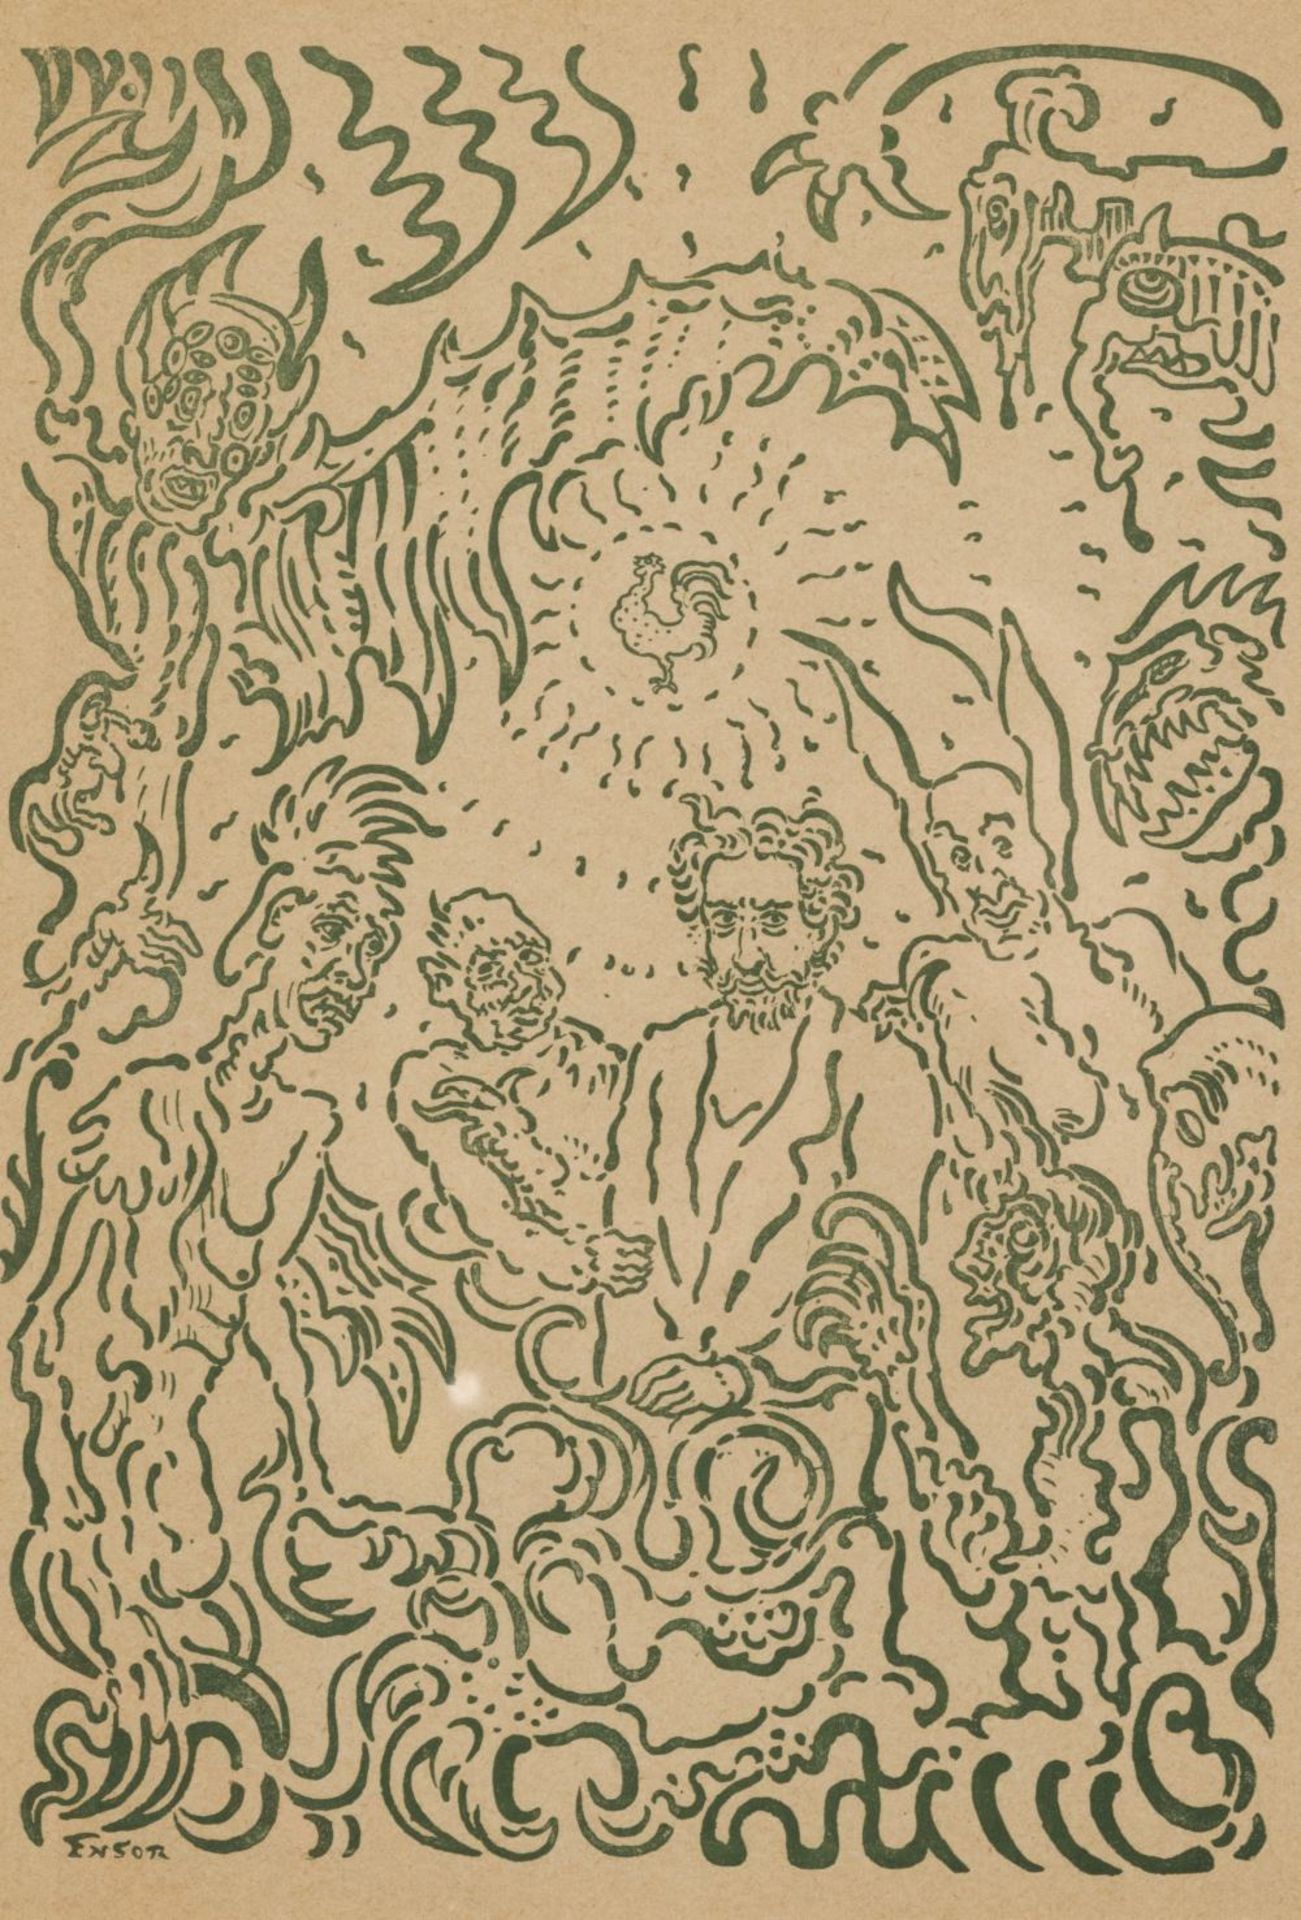 JAMES ENSOR (1860-1949) D&#233;mons me turlupinants,1898 Affiche lithographique pour 'La Plume'....